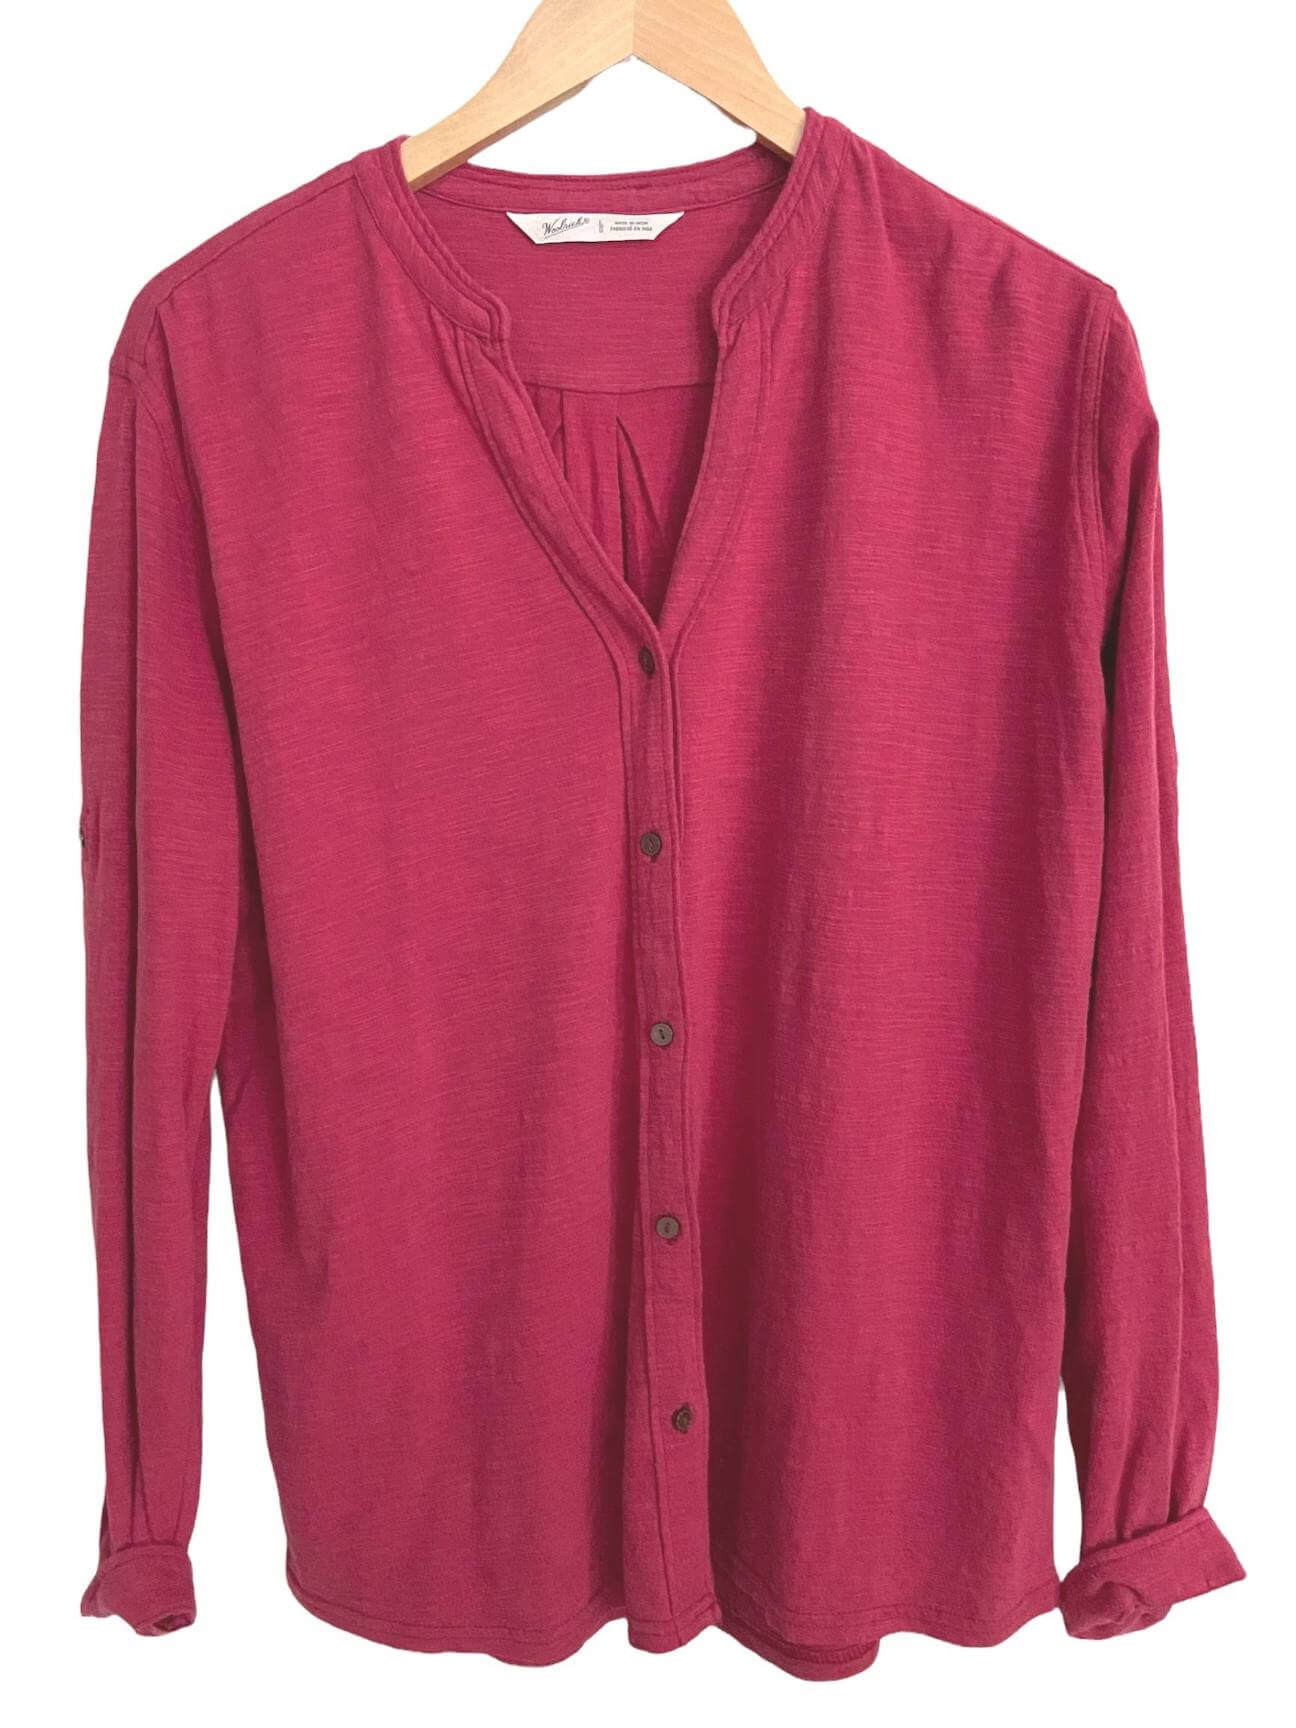 Soft Summer WOOLRICH pink knit shirt